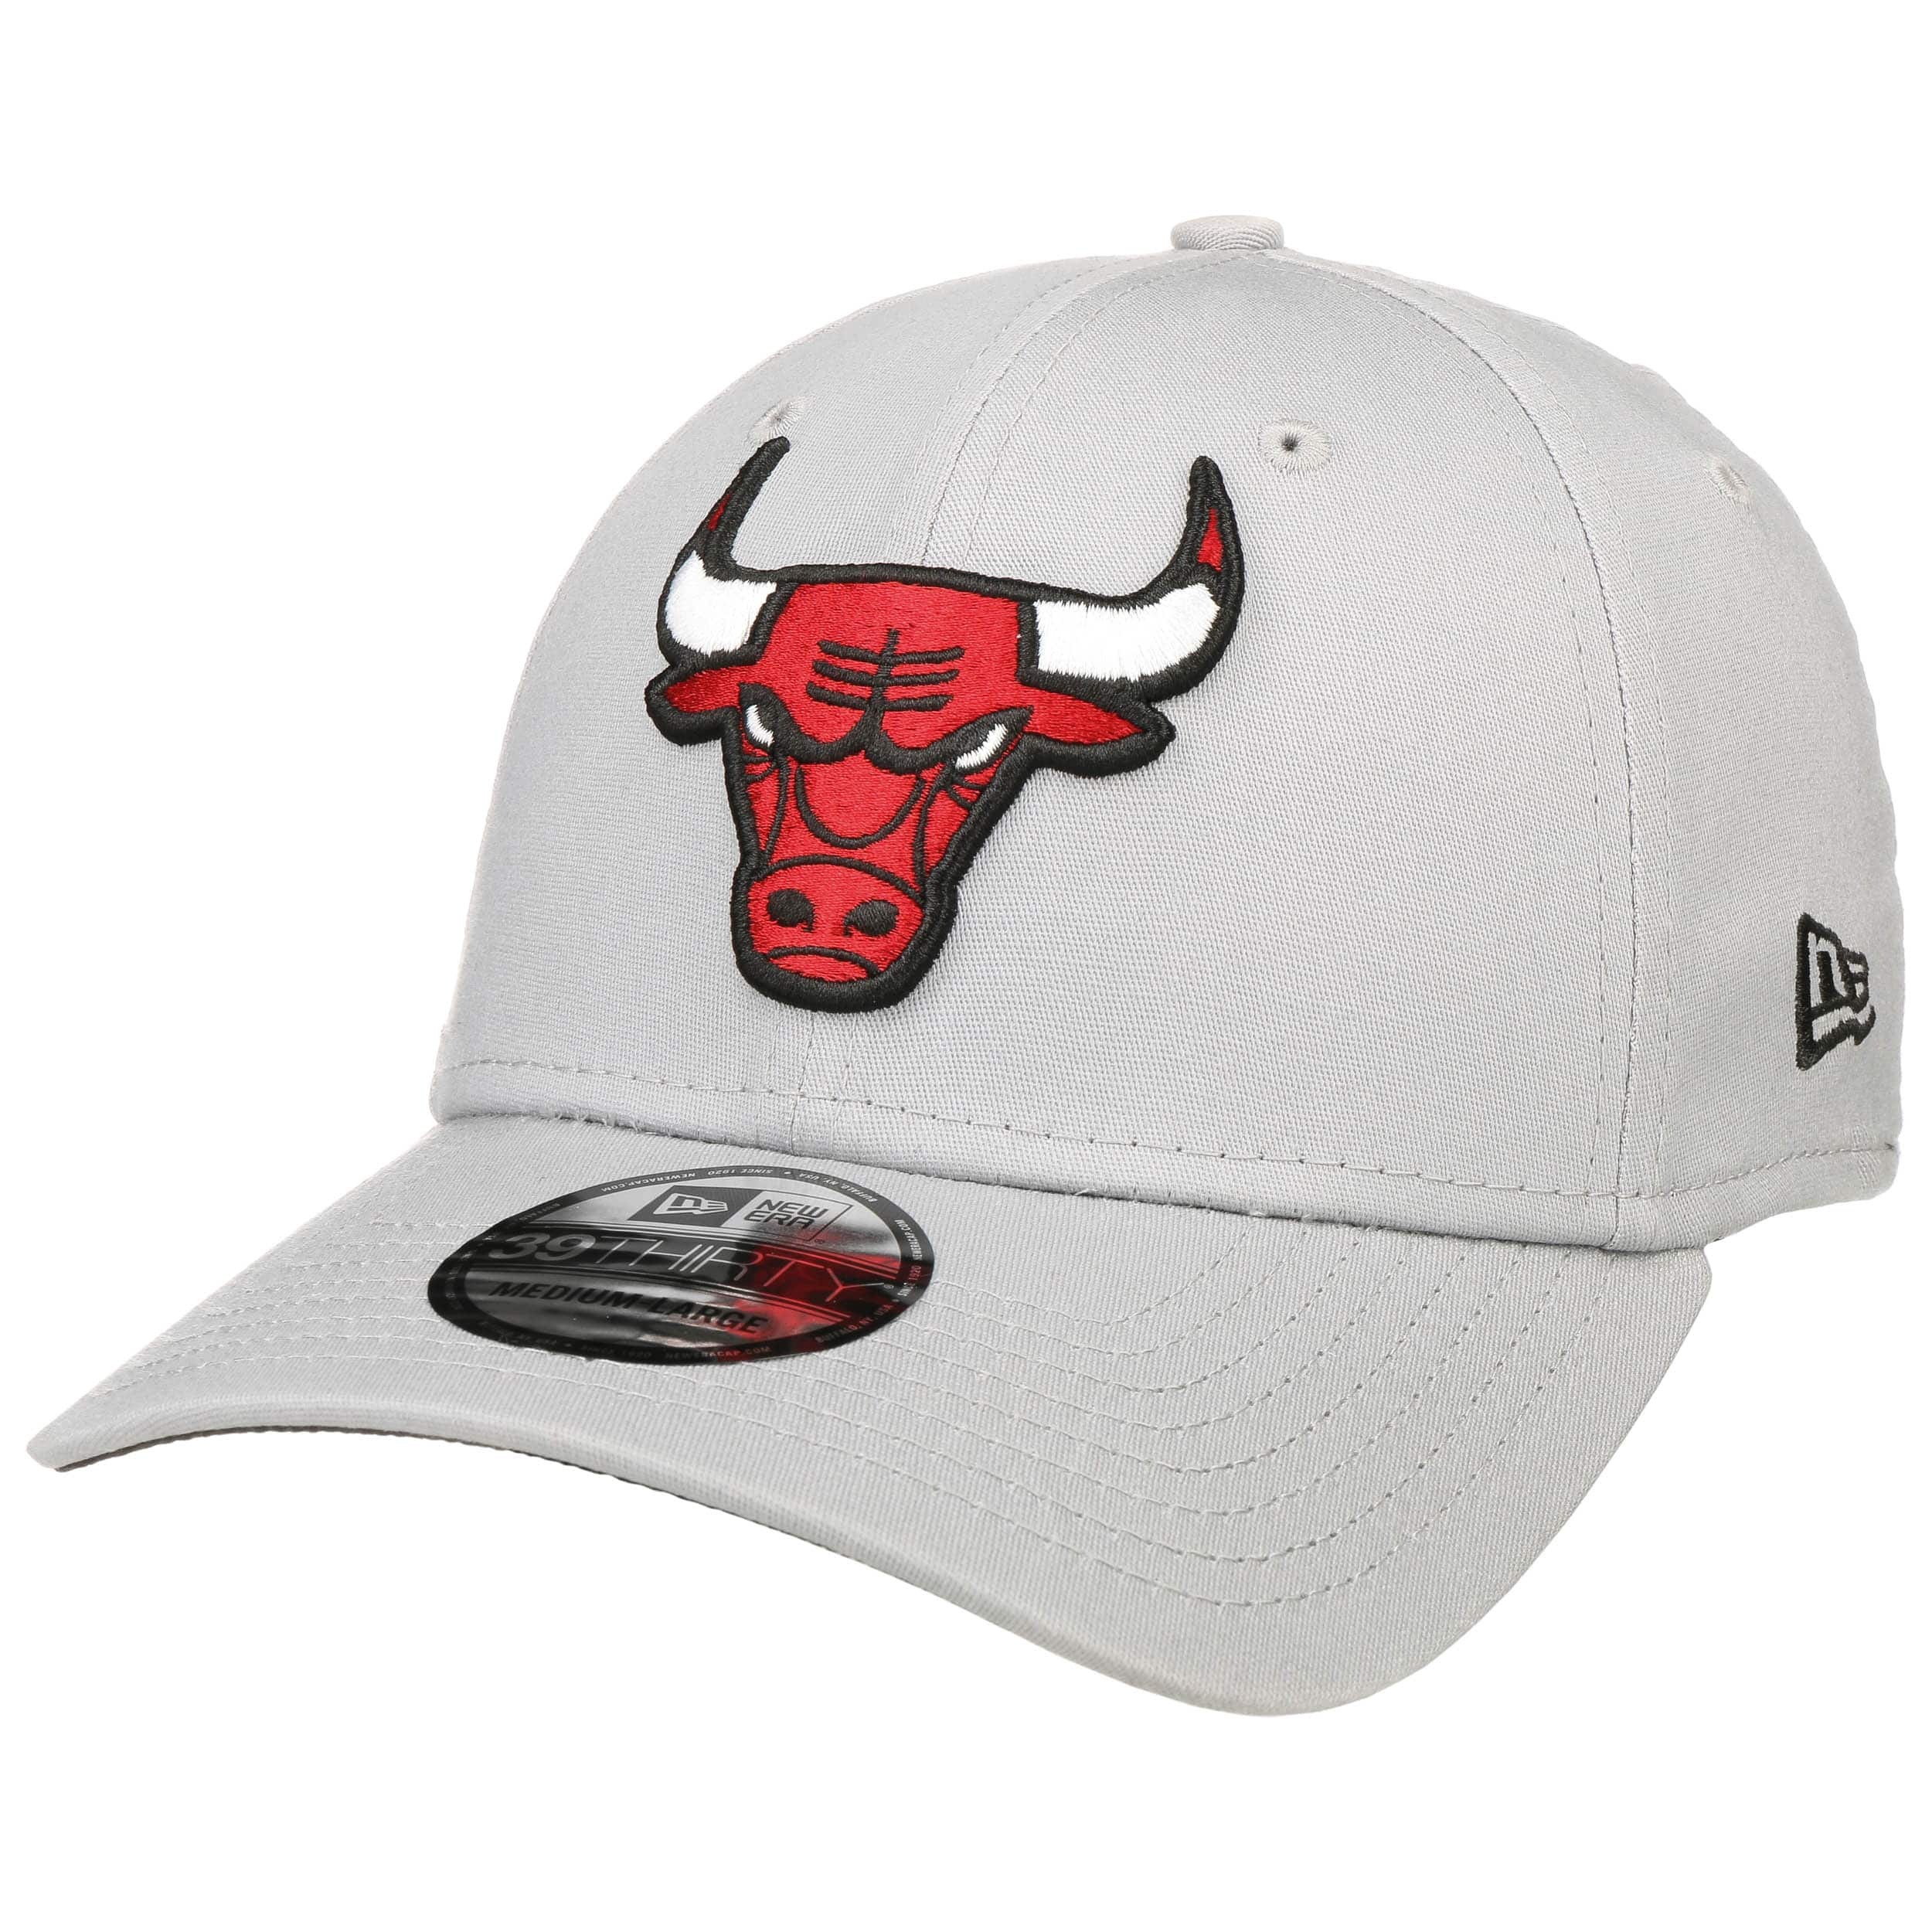 Gorra de Chicago Bulls NBA 39Thirty Red